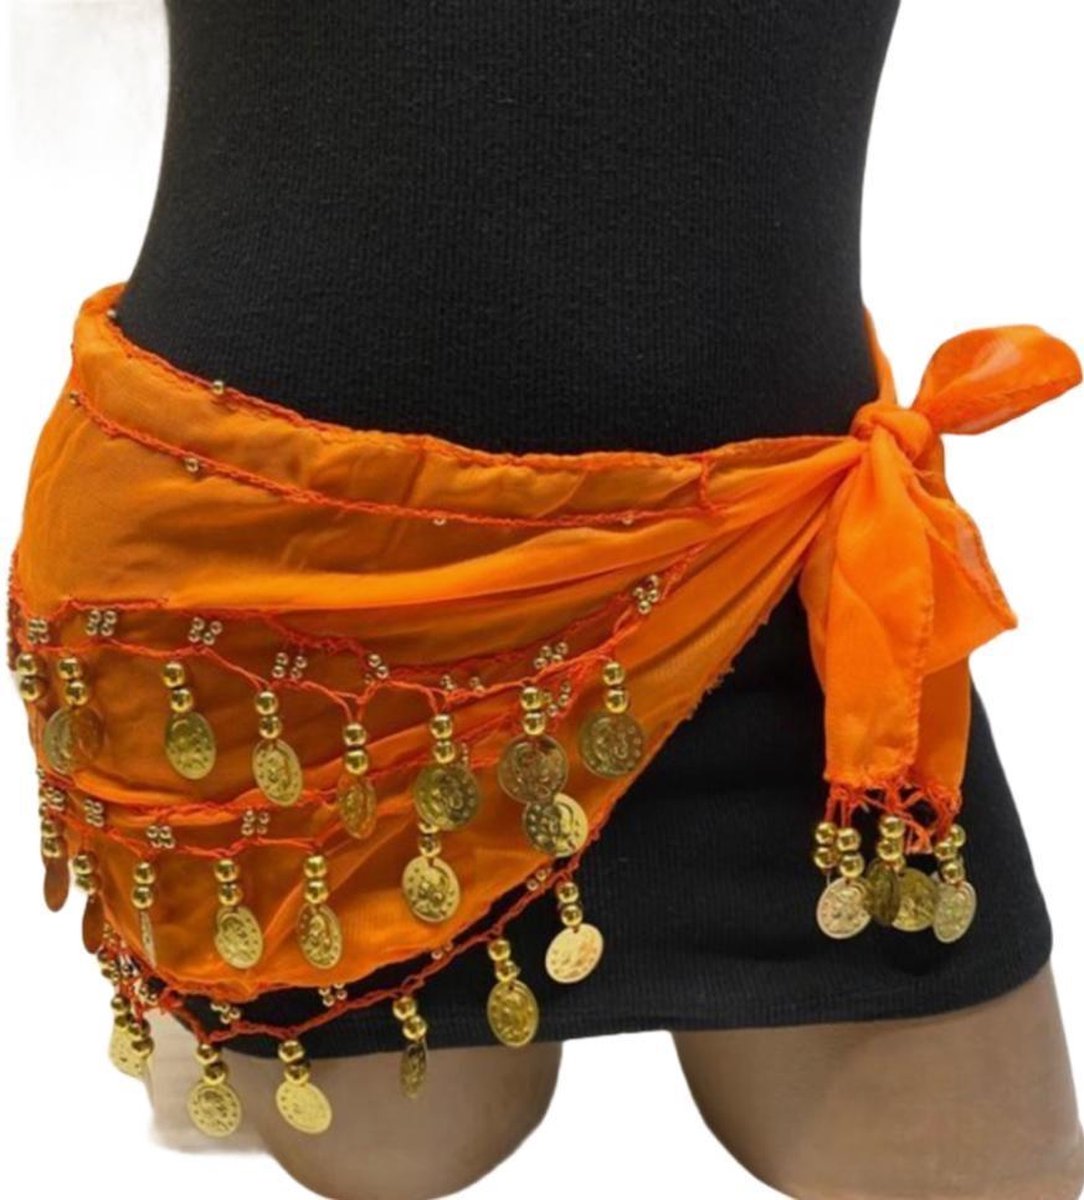 Buikdans - Sjaal - Heupsjaal - Oranje - Gouden Muntjes - 150 cm